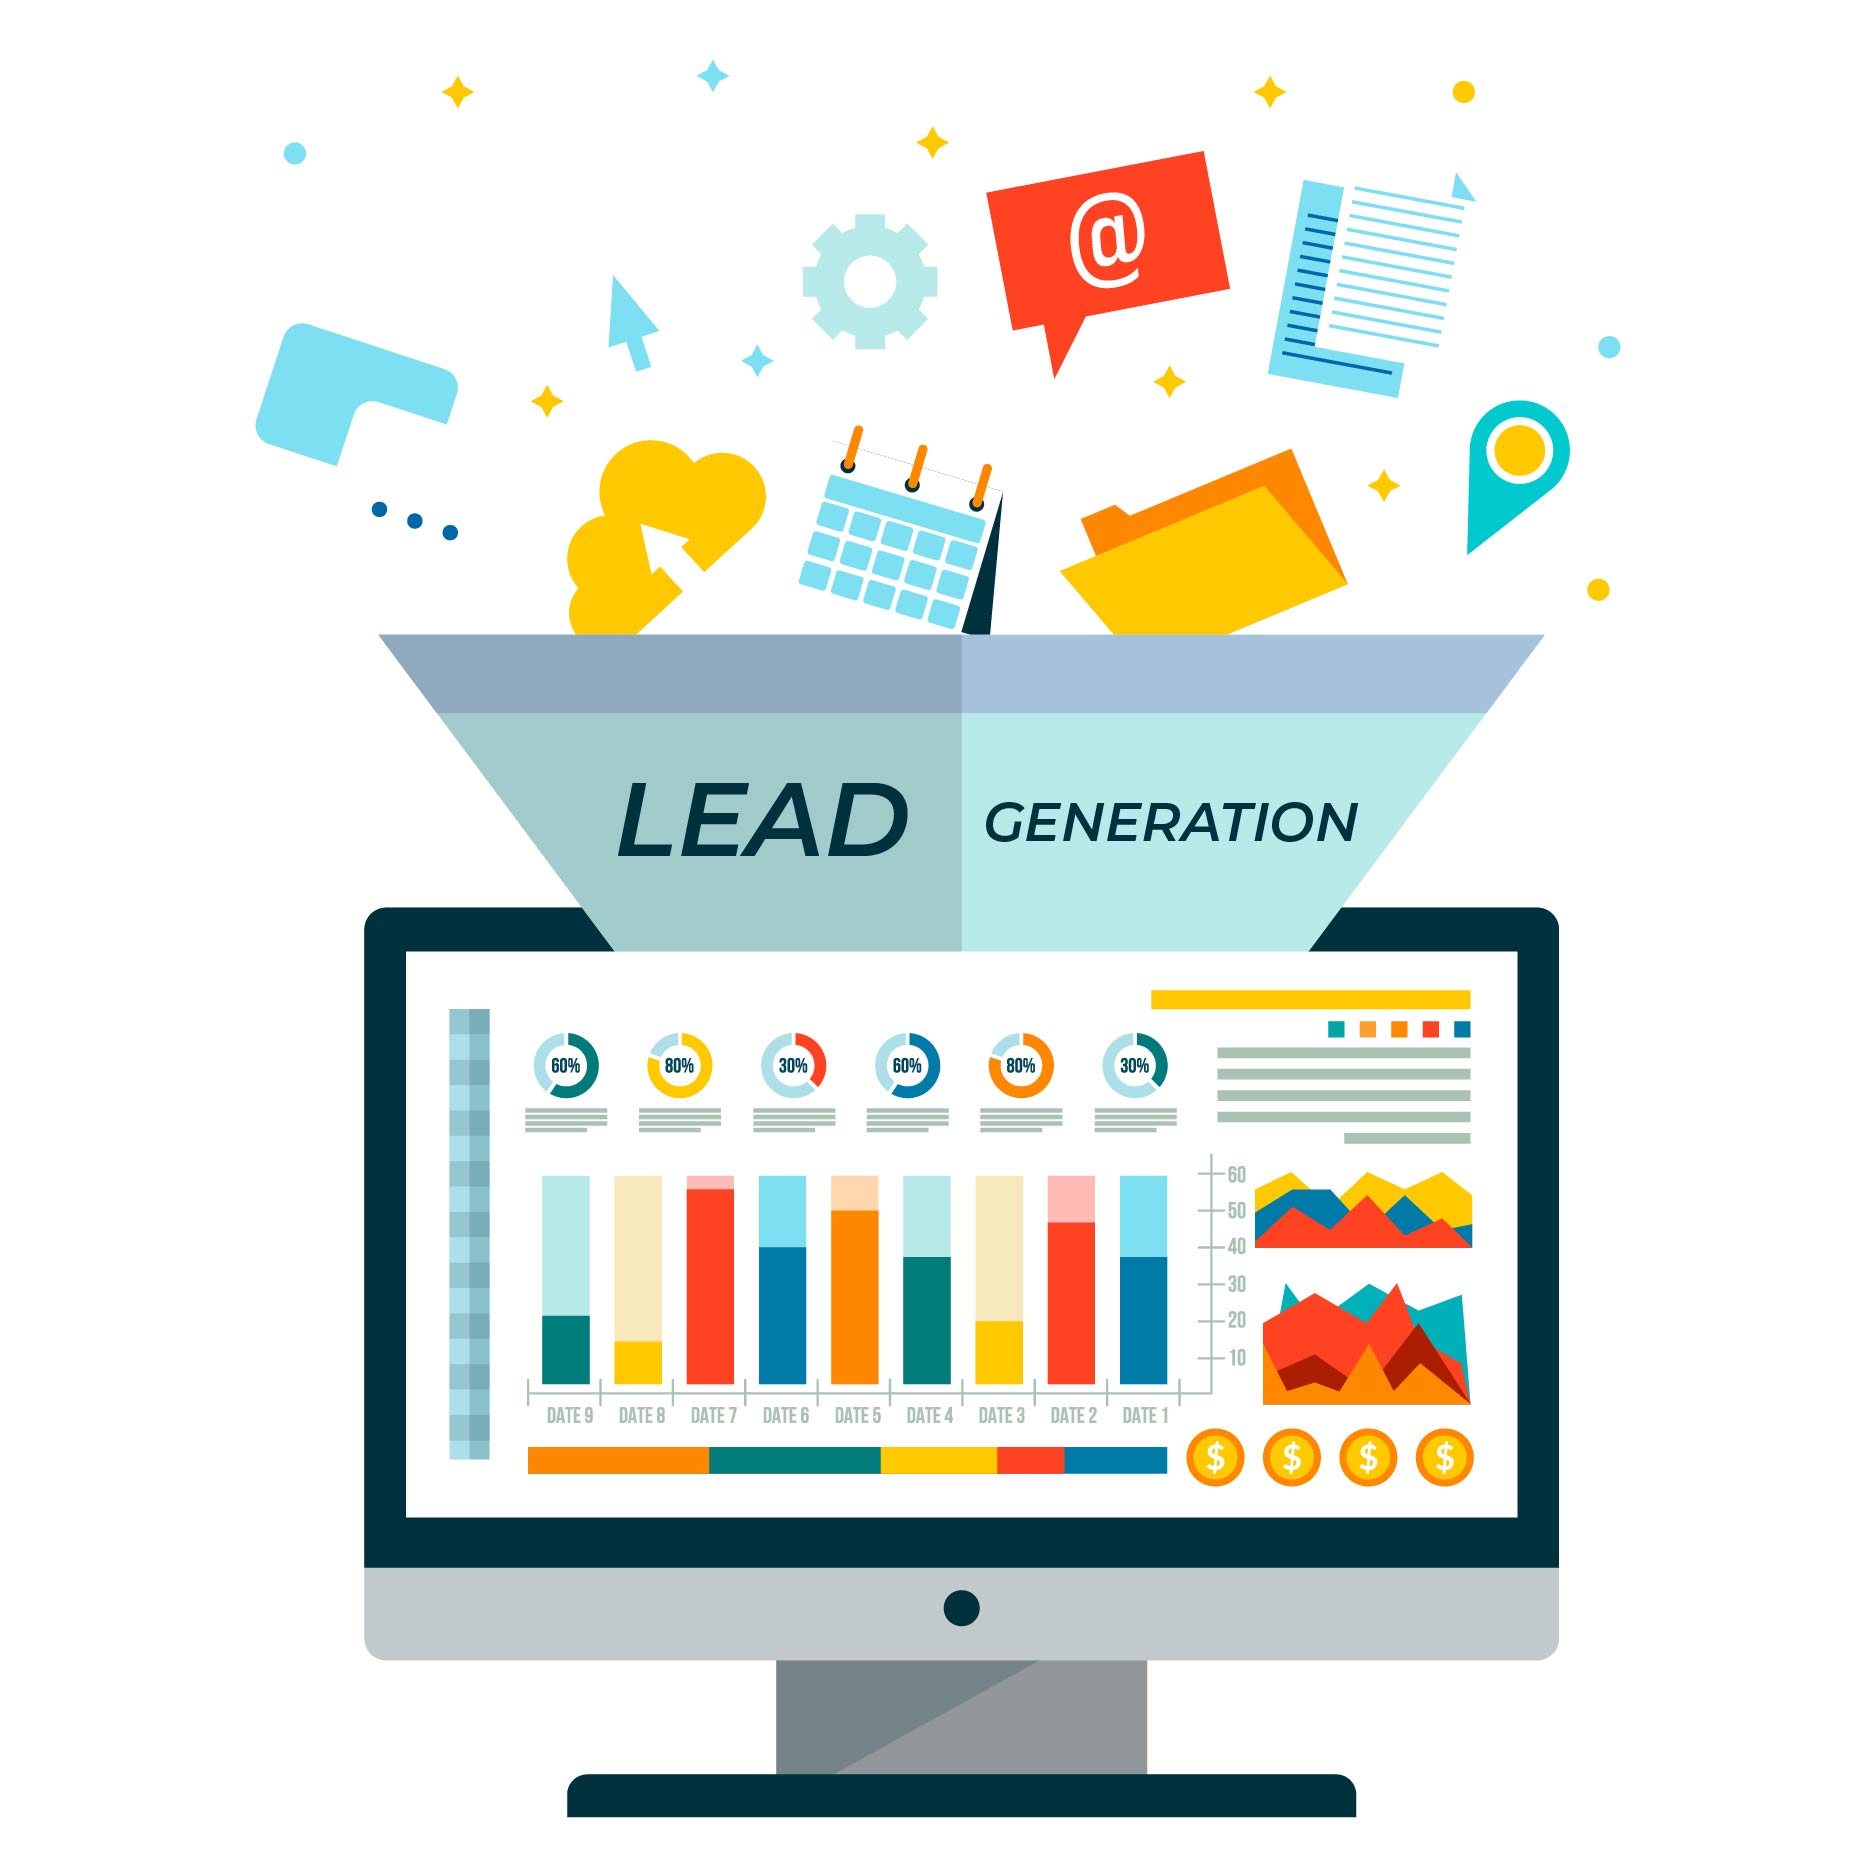 Lead Generation | A Sales Conversion Course